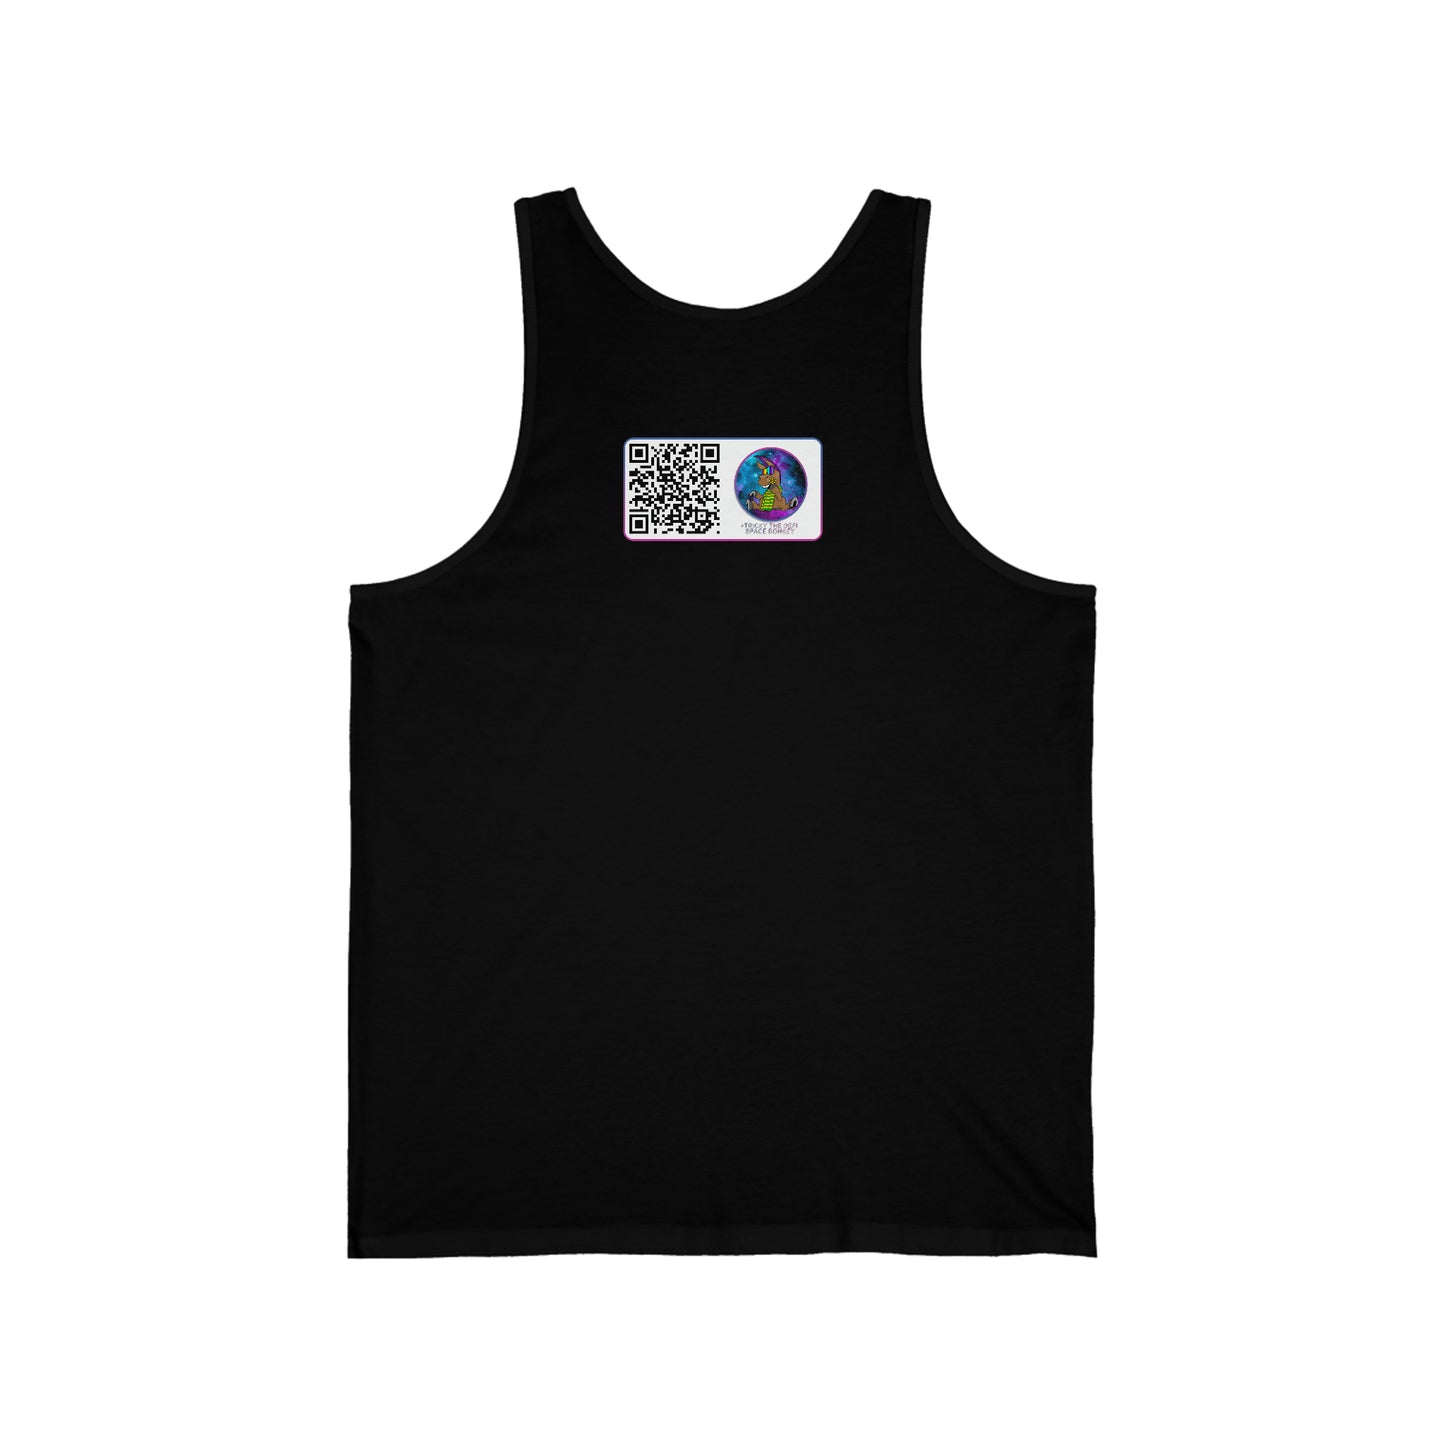 Burros espaciales DeFi #16 Camiseta sin mangas unisex